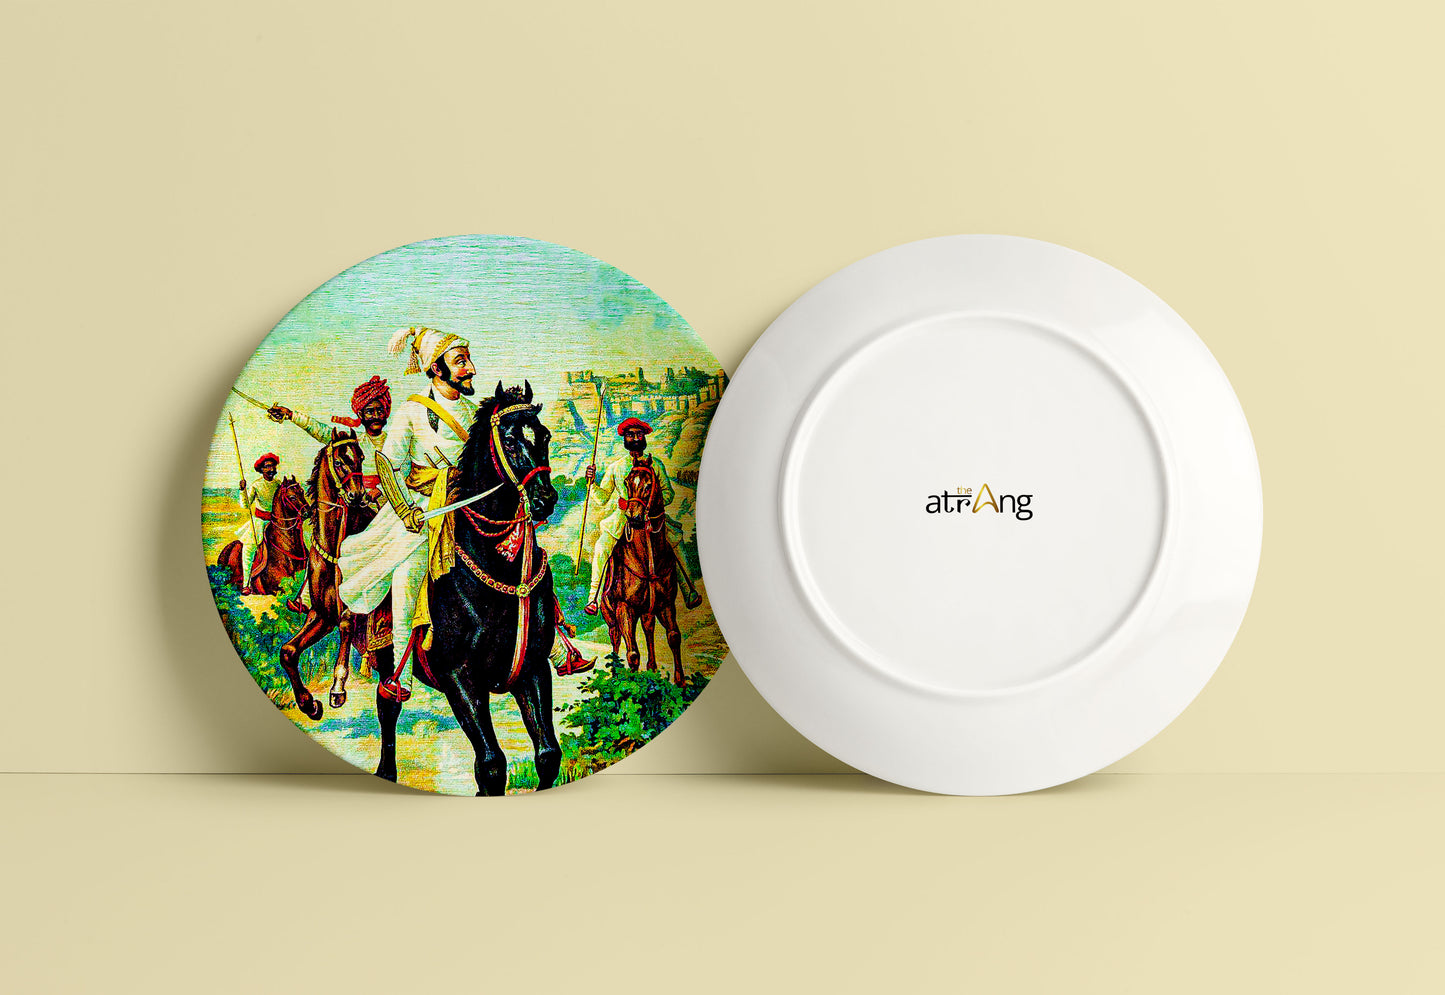 Chattrapati Shivaji Maharaj with Sant Tukaram by Ravi Varma Ceramic Plate for Home Decor